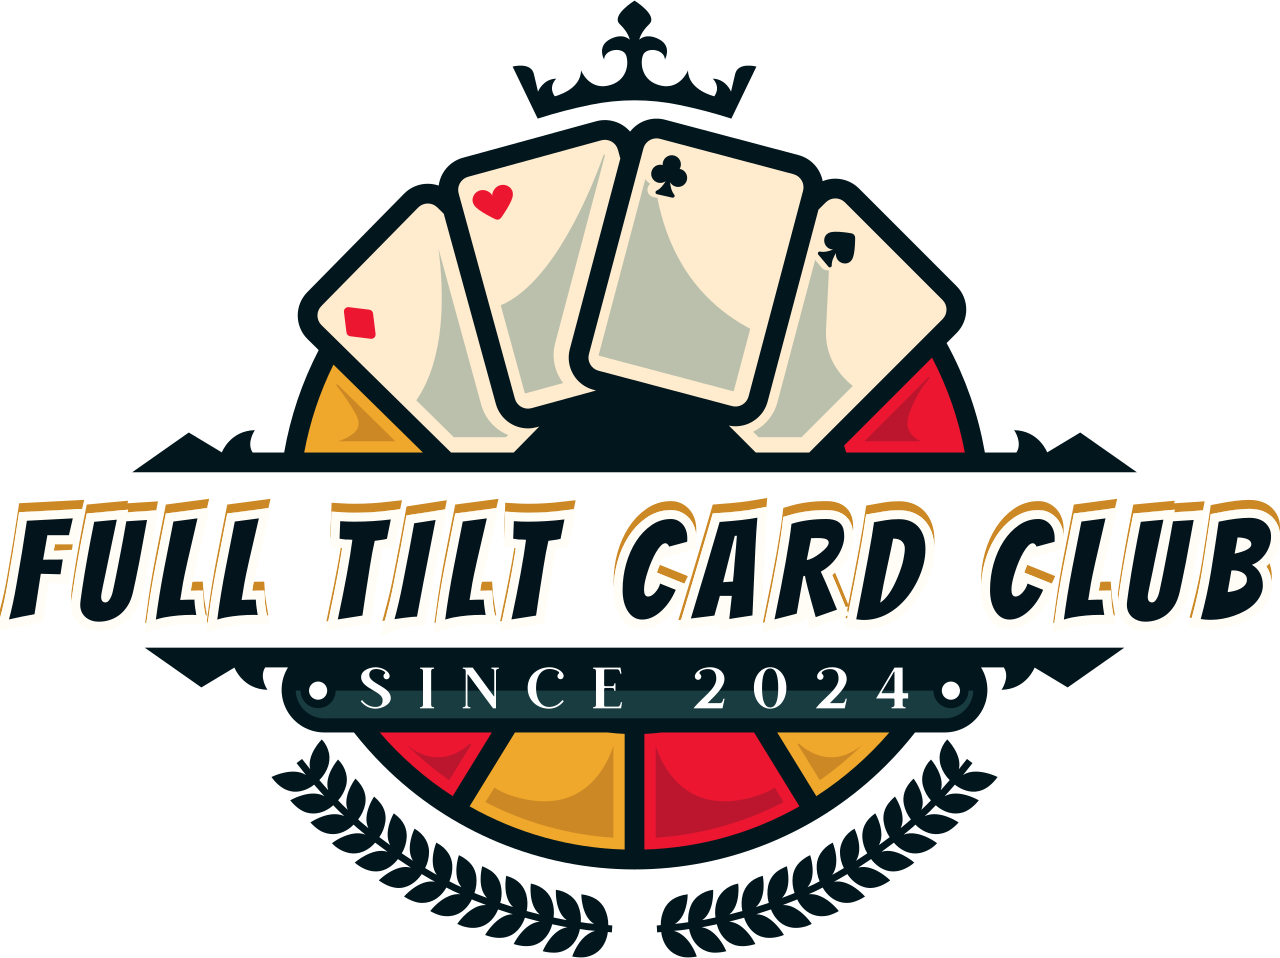 Full tilt card club's logo